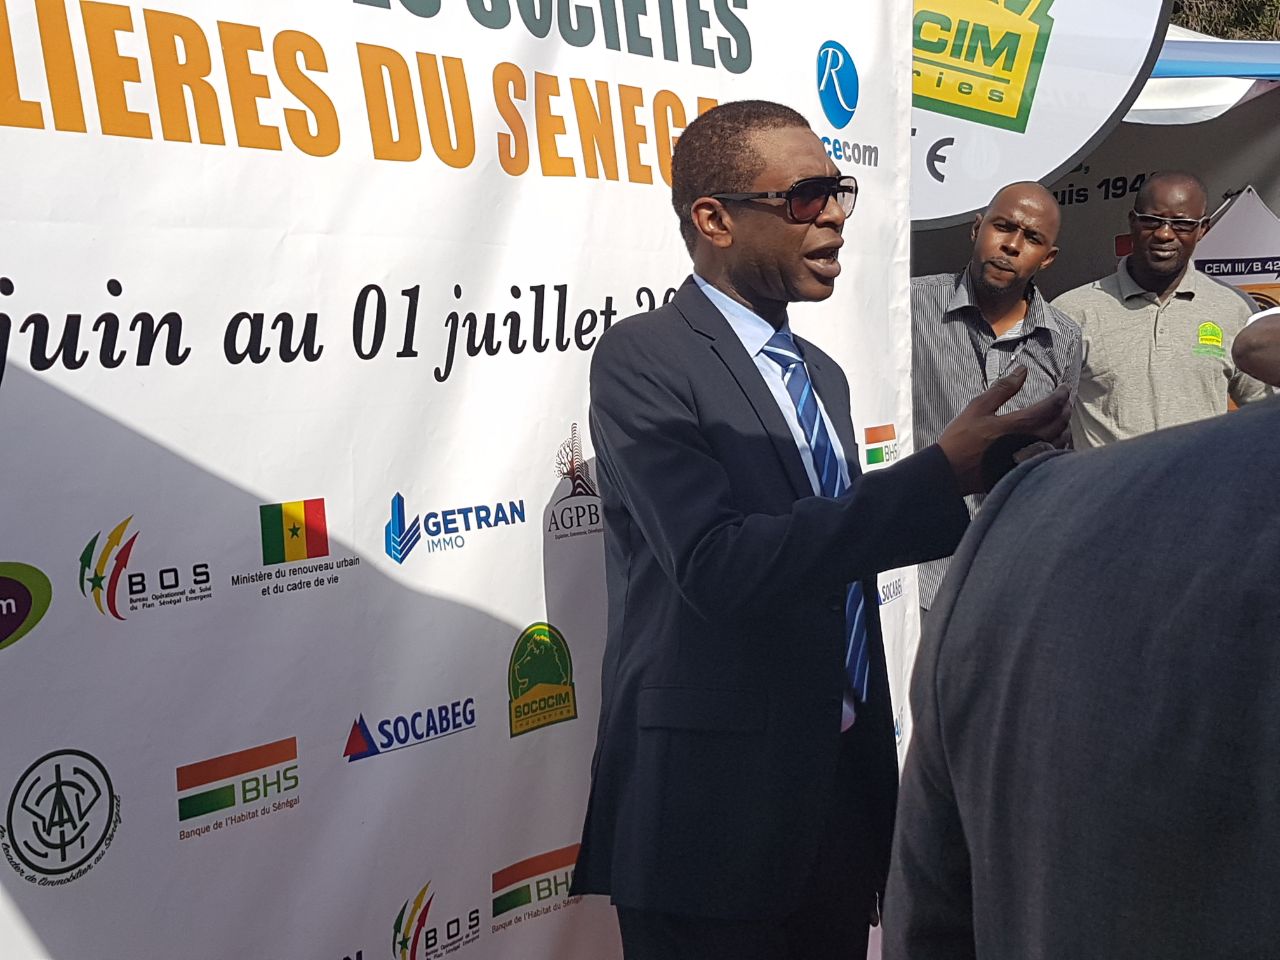 Salon de la plate-forme des sociétés immobilières du Sénégal, une réussite pour Djeynaba Seydou Ba de la TFM